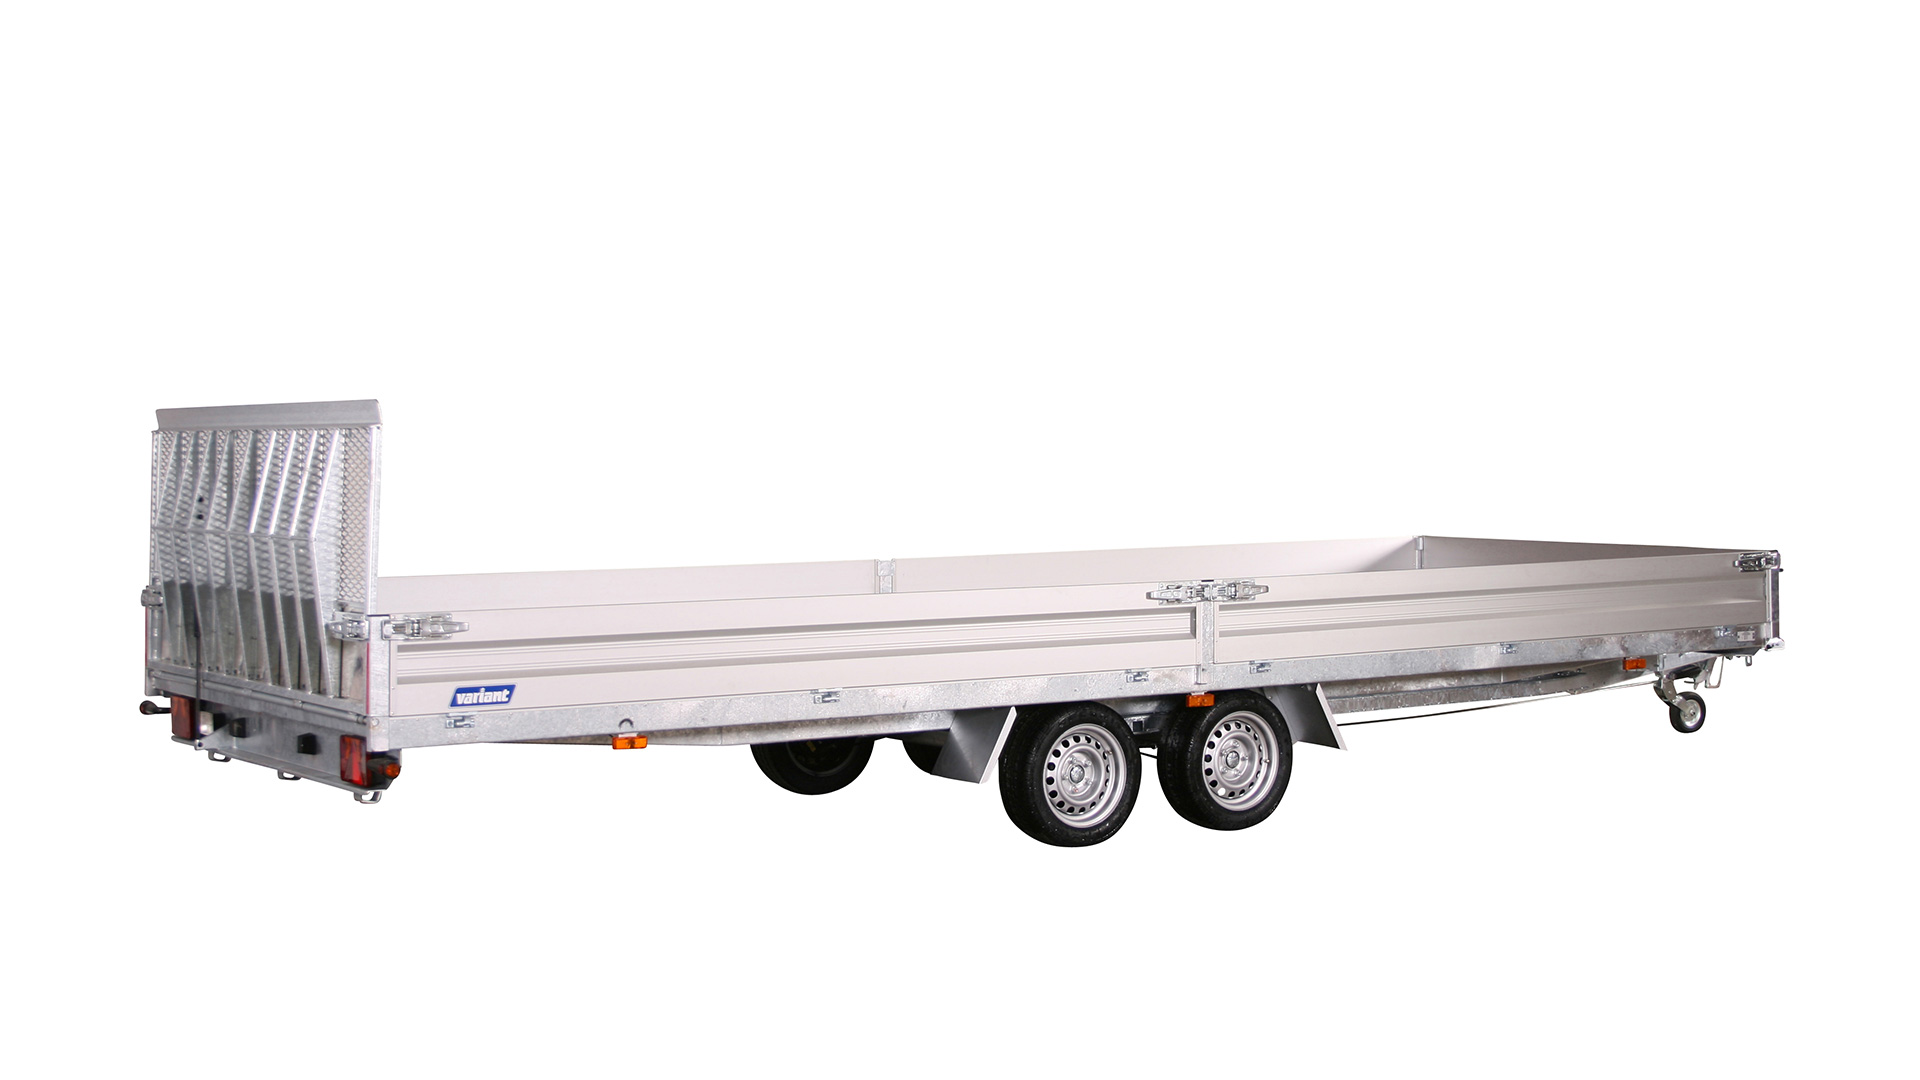 Variant PKW Anhänger Universaltransporter 3521 U6 - kippbar3500 kg, Ladefläche 6,20 x 2,10 m, mit Bordwände